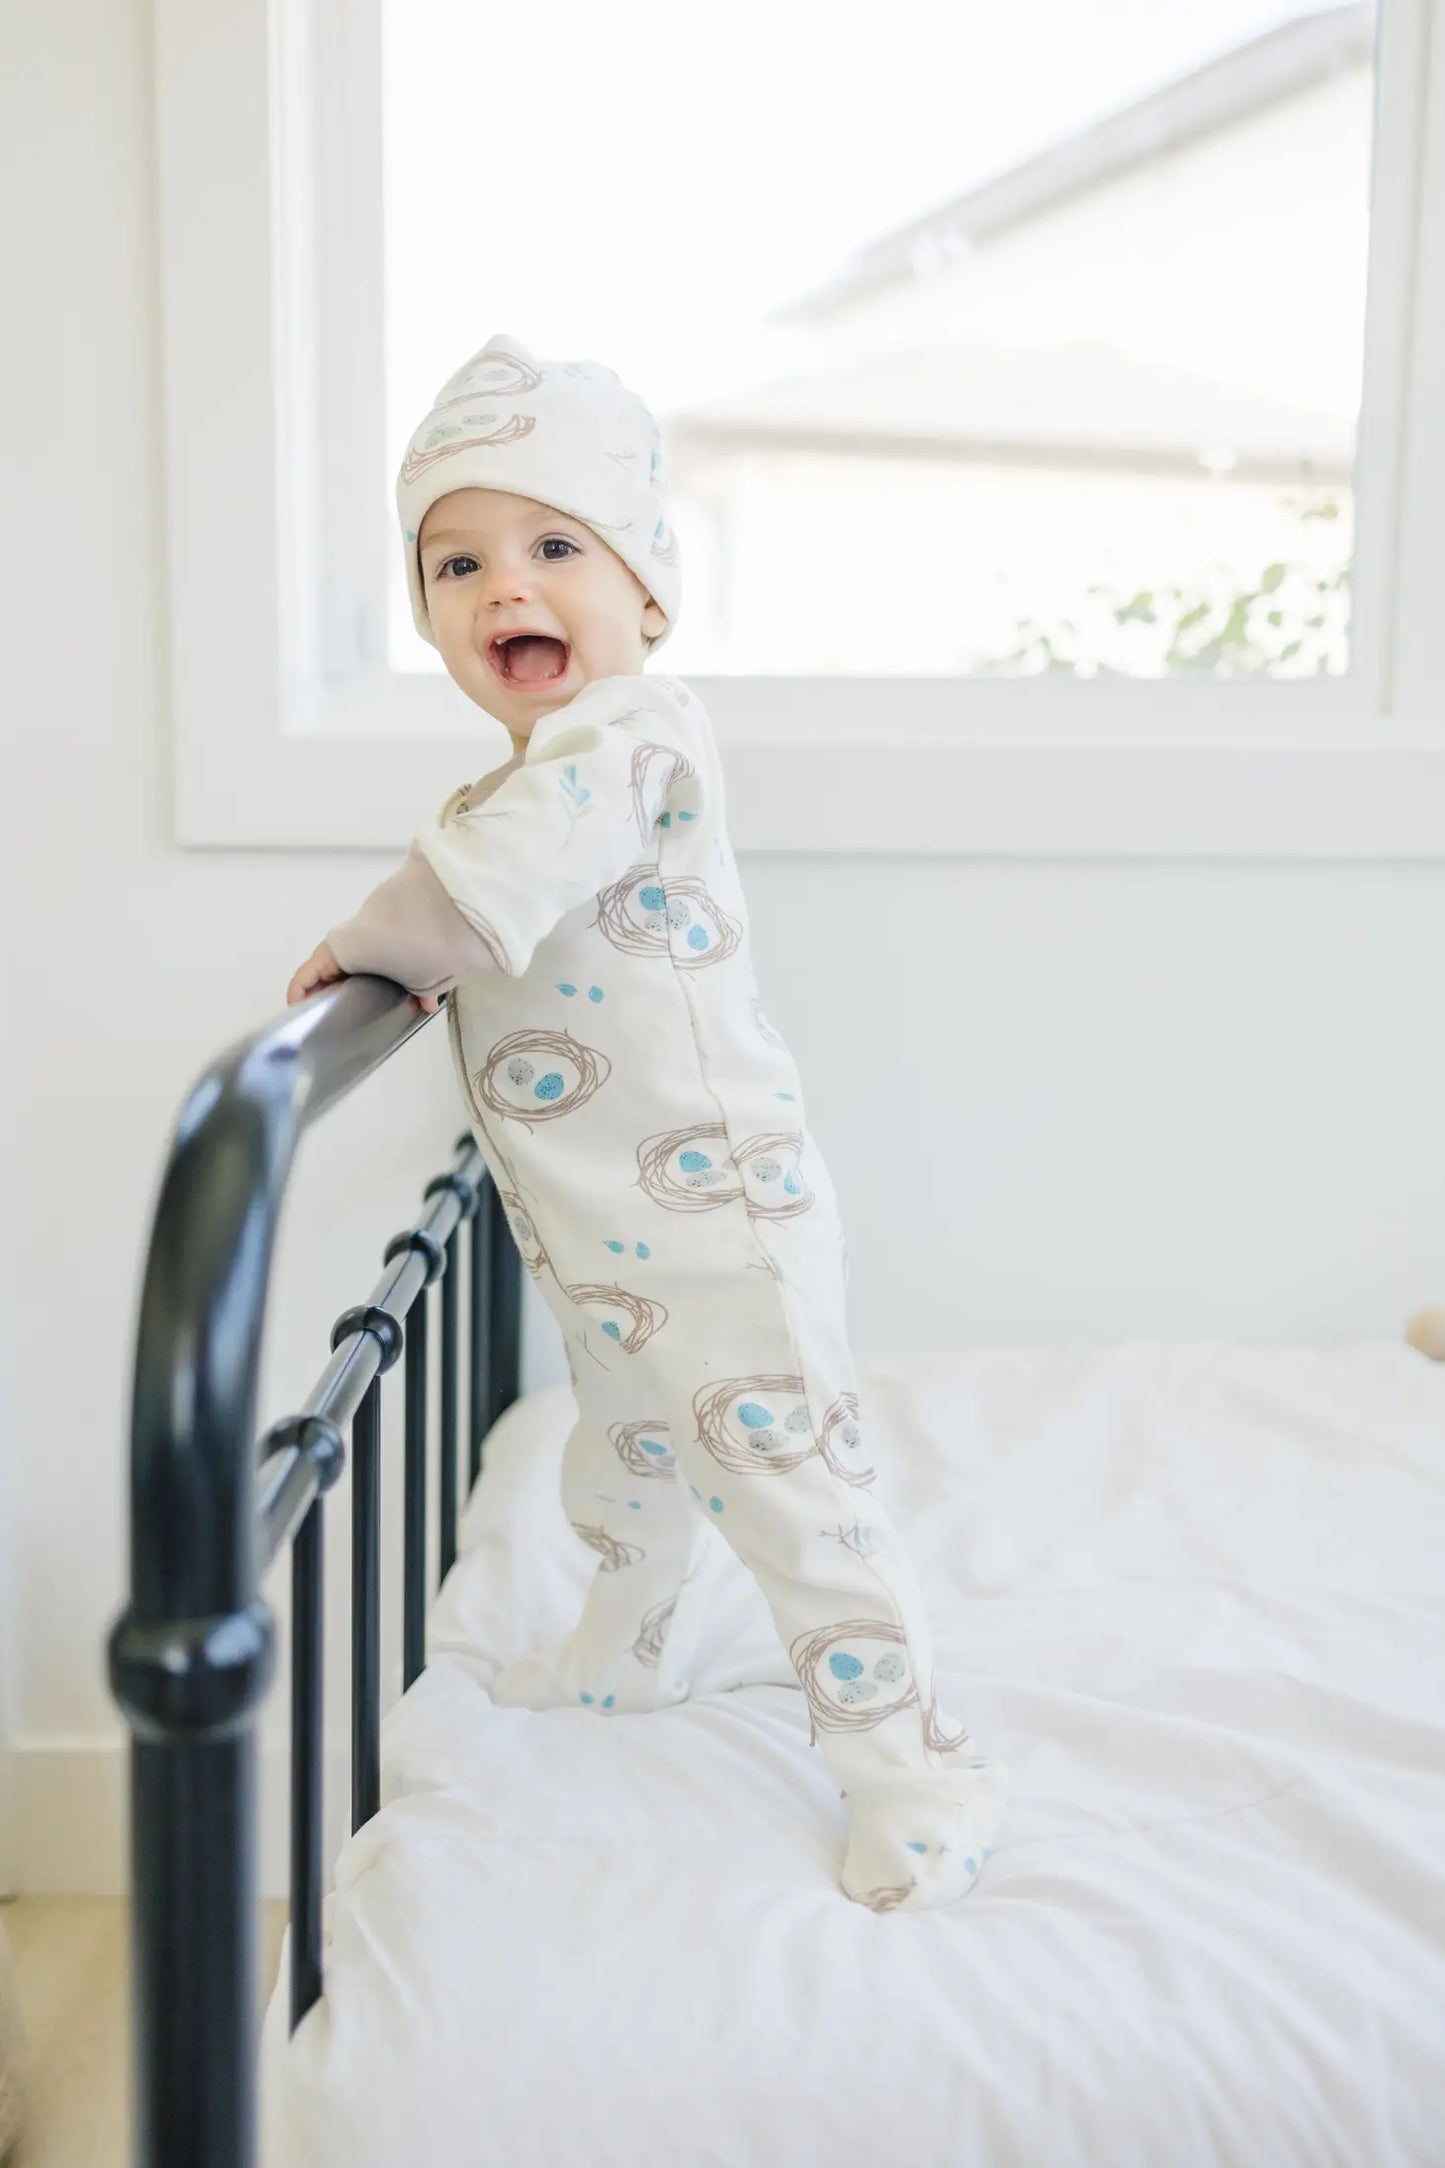 Quail Nest Organic Baby Footie Pajamas